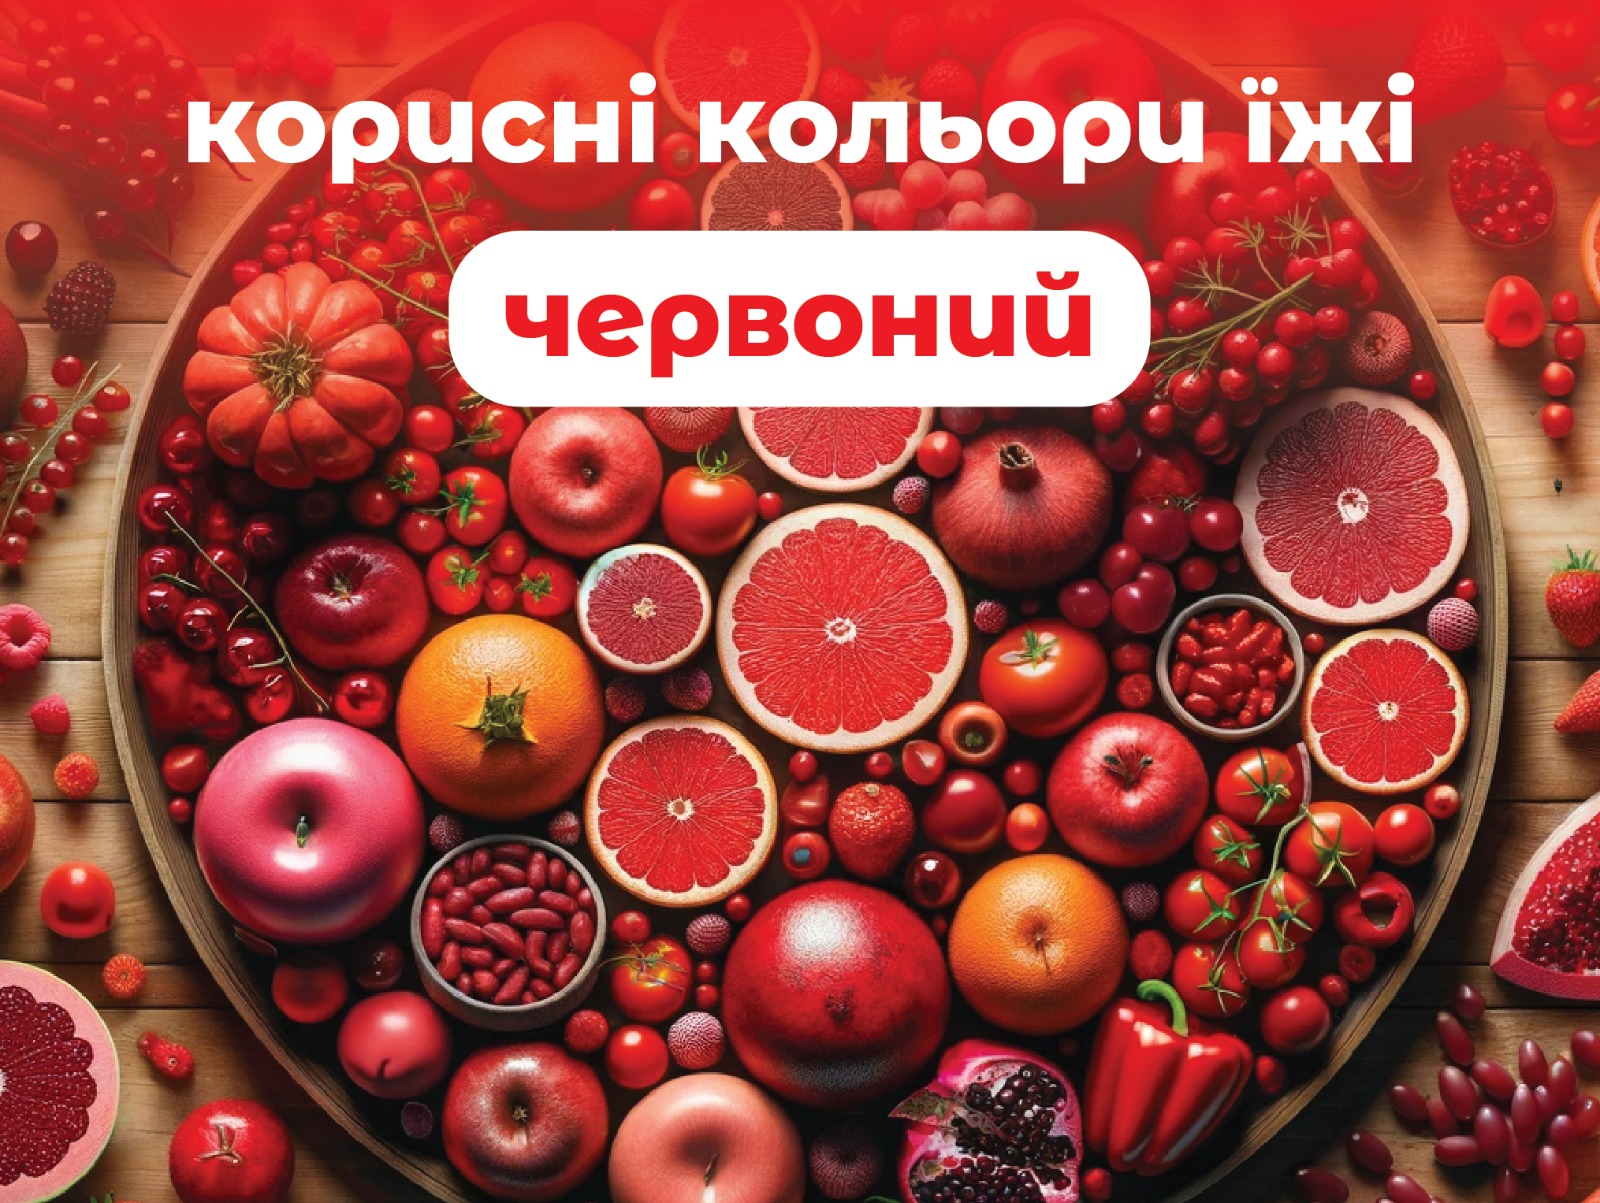 На зображенні овочі і фрукти що мають червоне забарвлення, у верхній частині напис: червоний-корисні кольори їжі